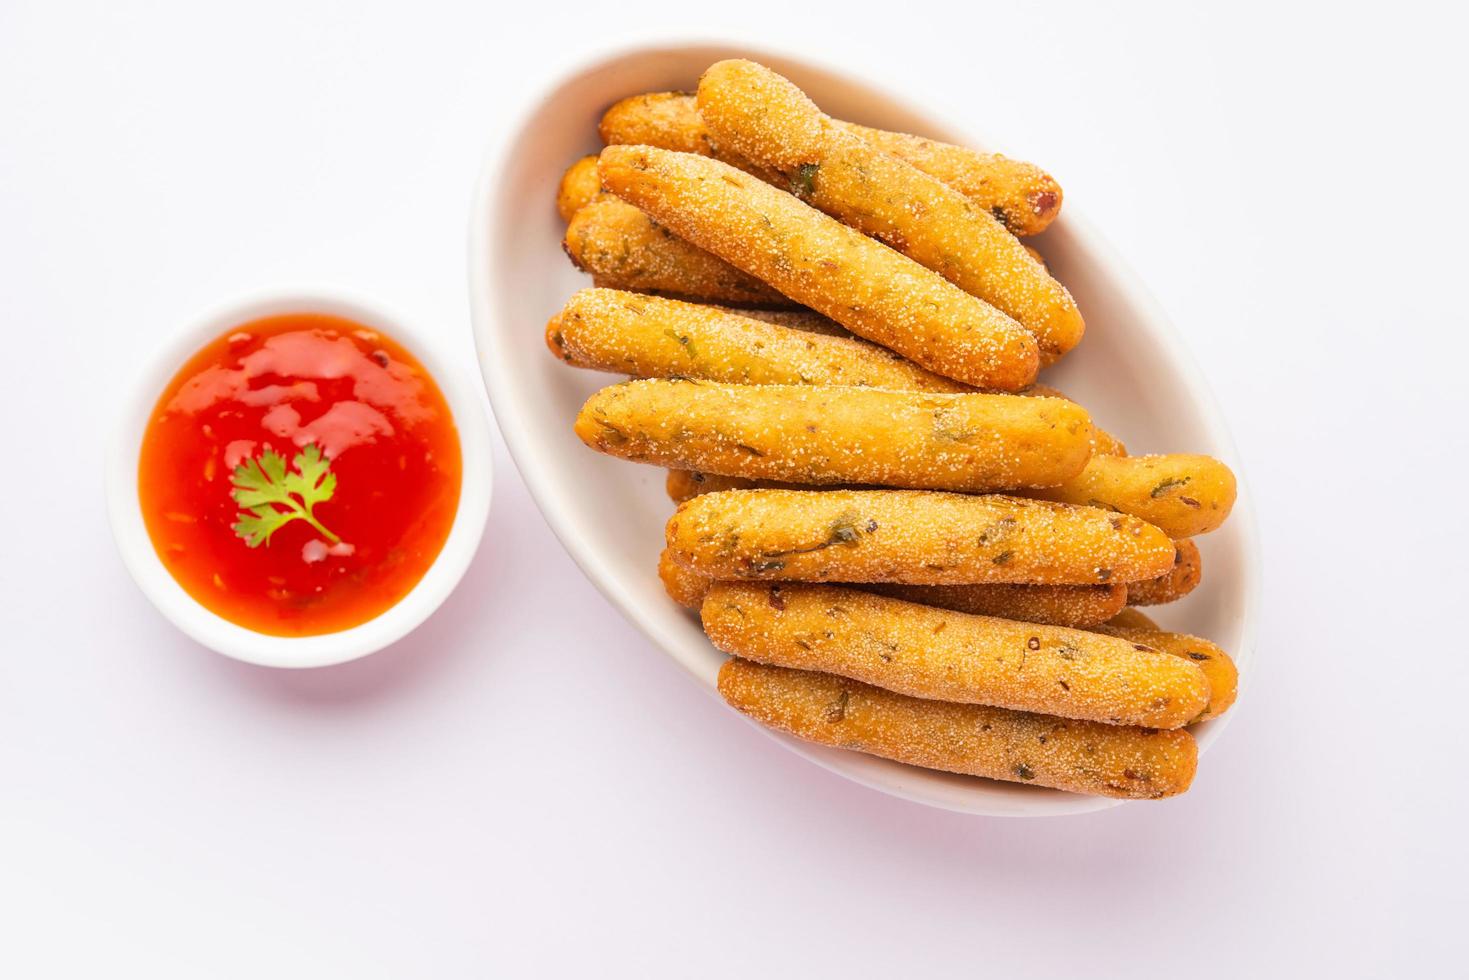 dedos crocantes de rava aloo ou sêmola de batata palitos fritos servidos com ketchup foto